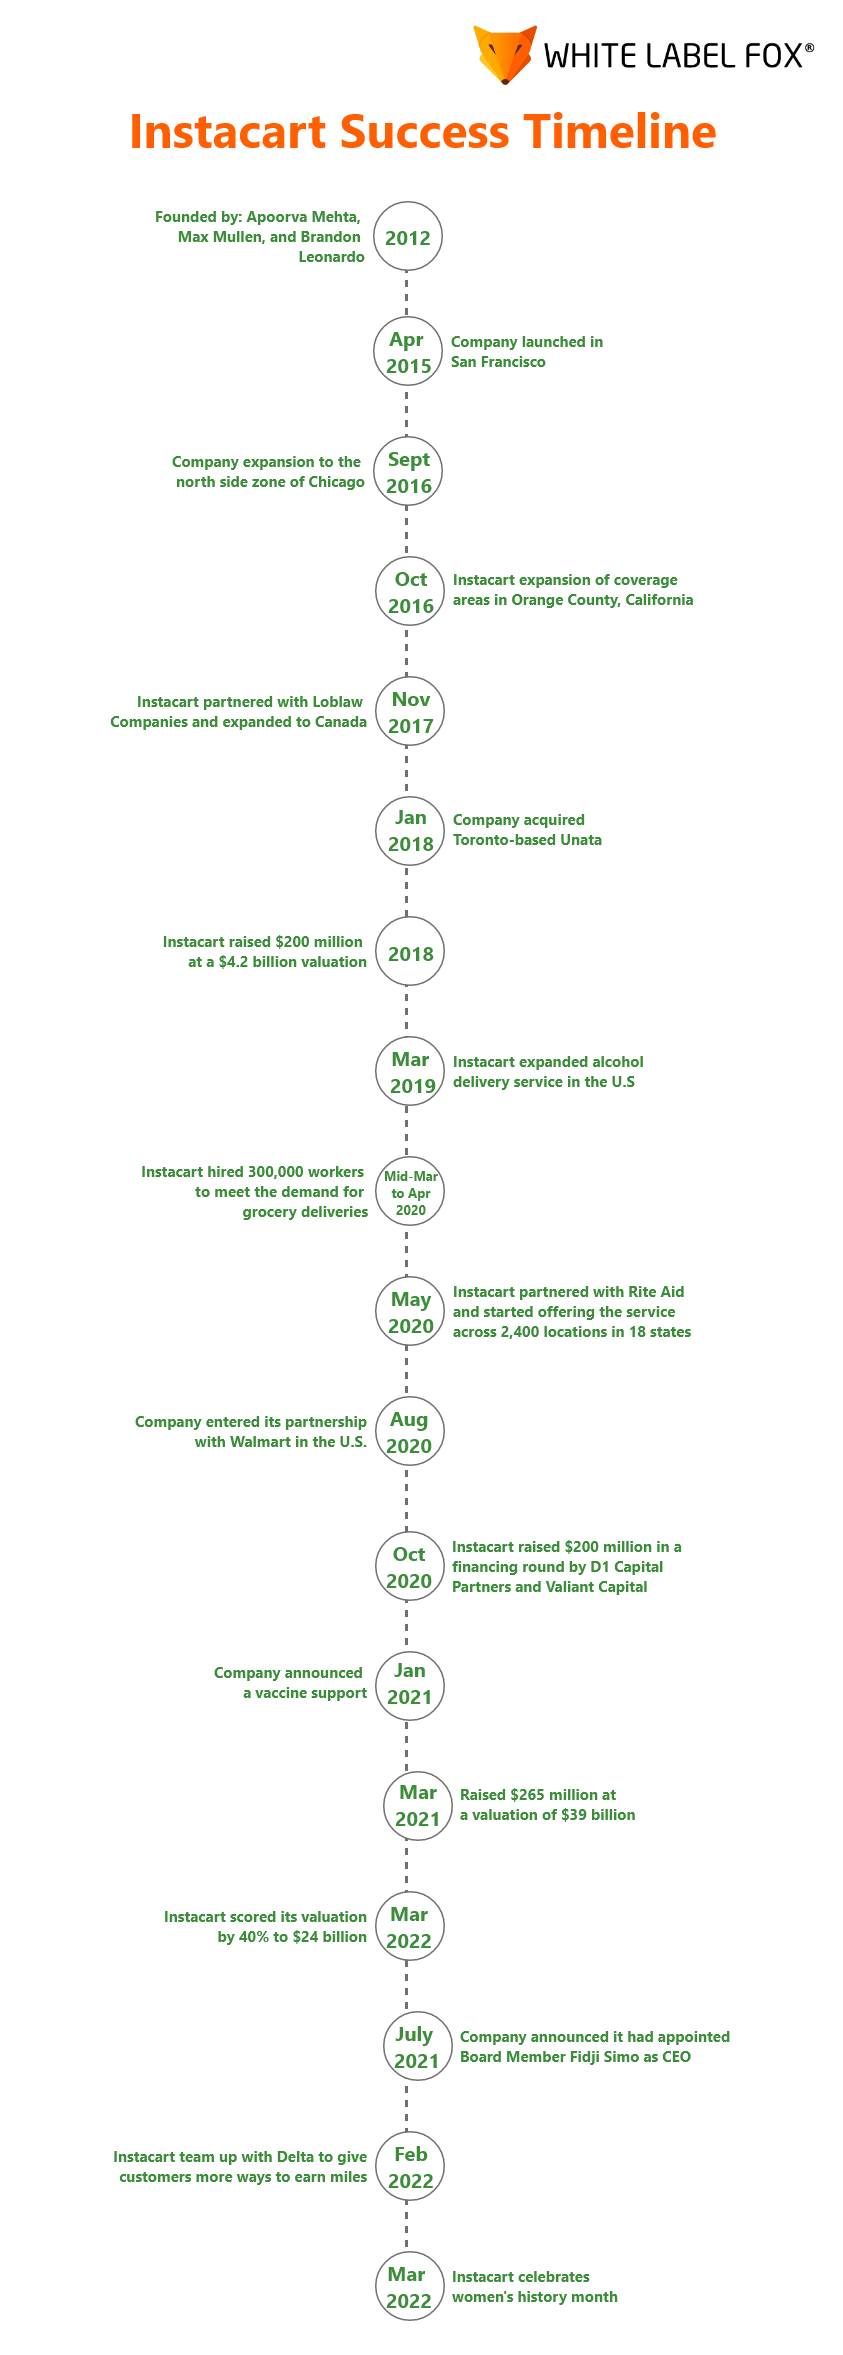 InstacartnSuccess Timeline